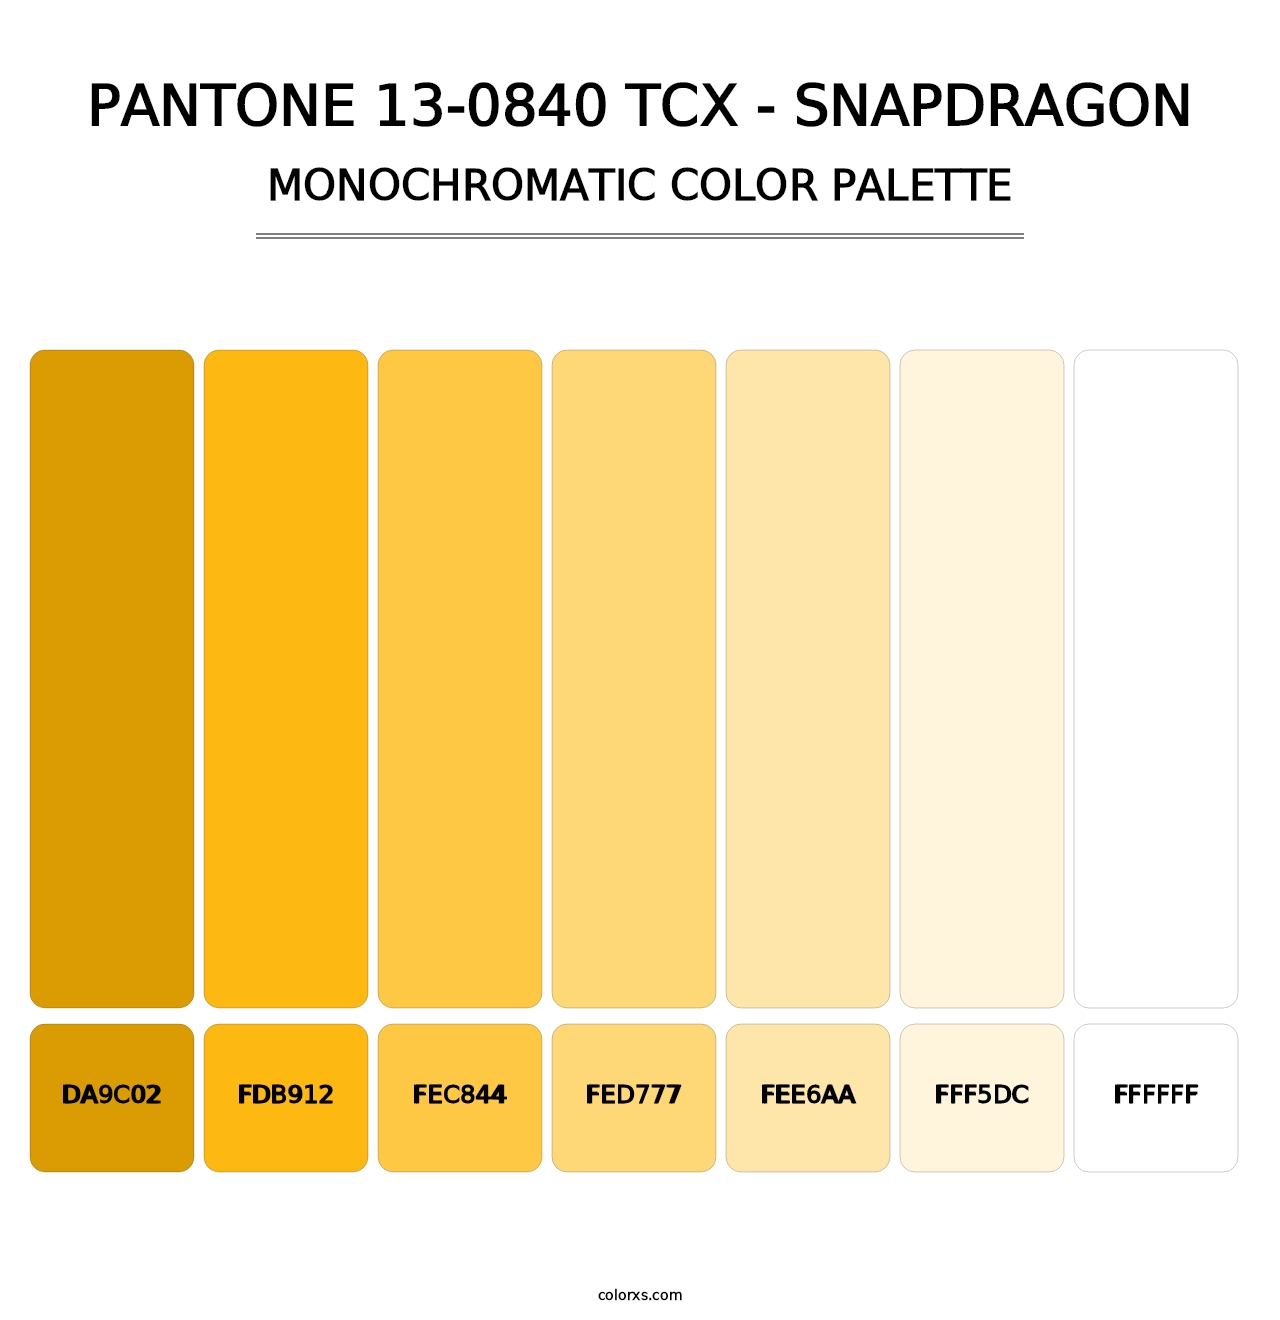 PANTONE 13-0840 TCX - Snapdragon - Monochromatic Color Palette